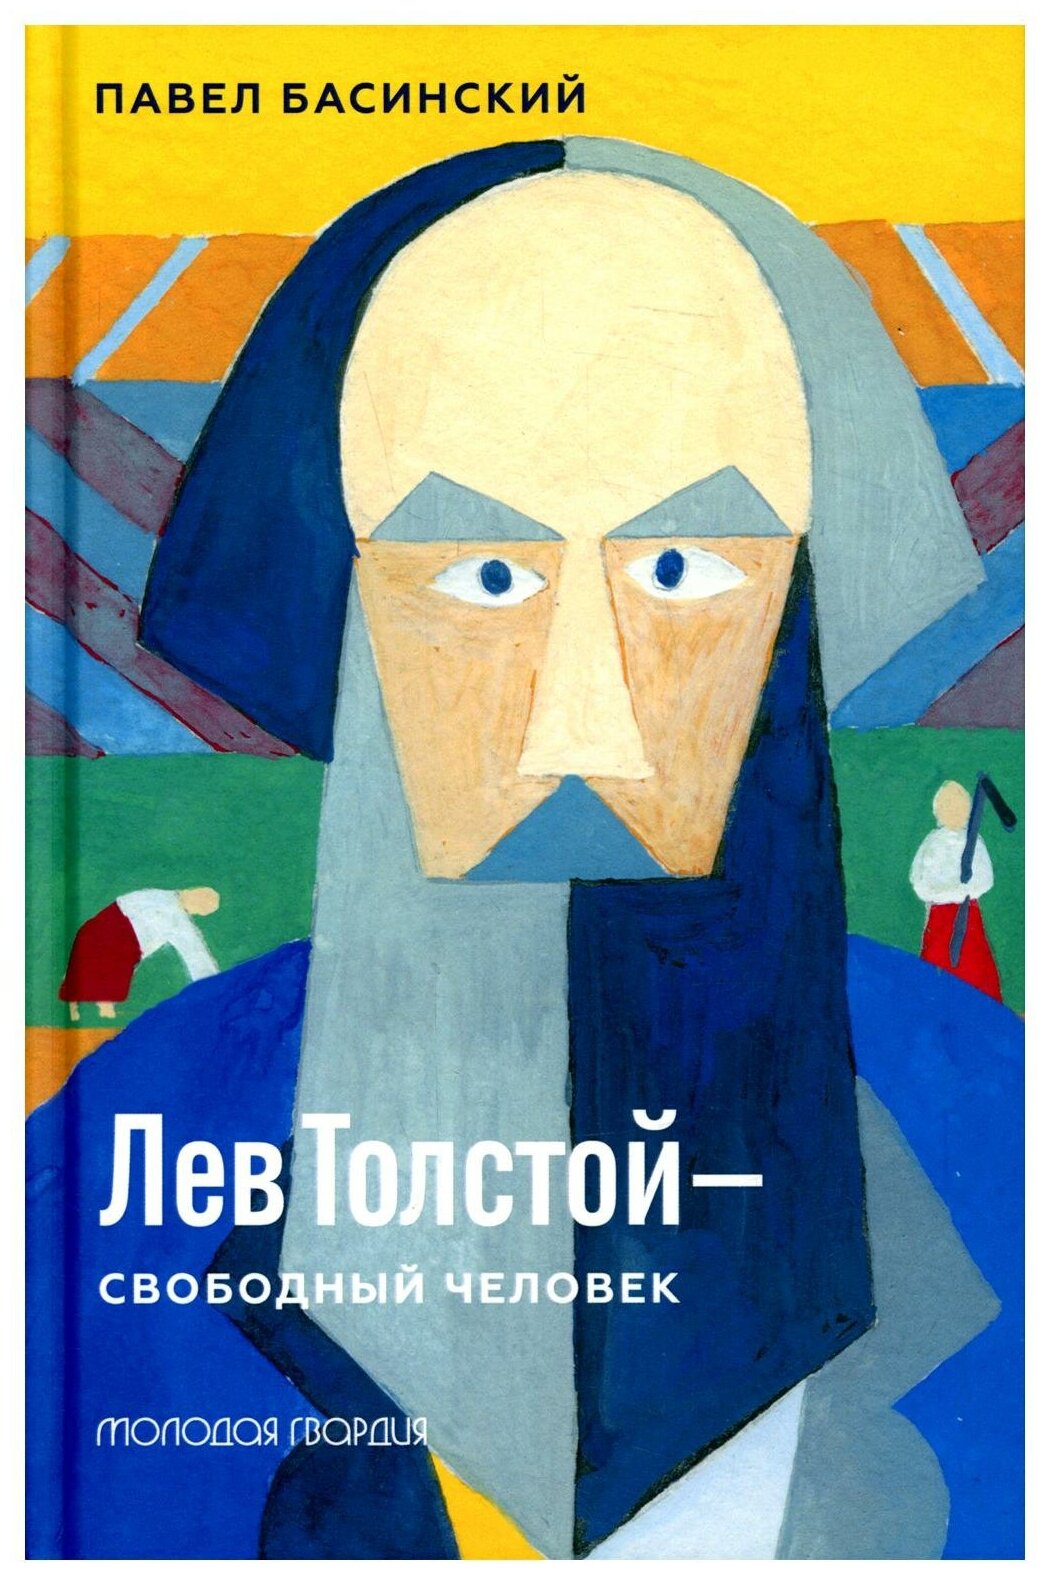 Книга Молодая гвардия Лев Толстой - свободный человек. 2022 год, П. Басинский